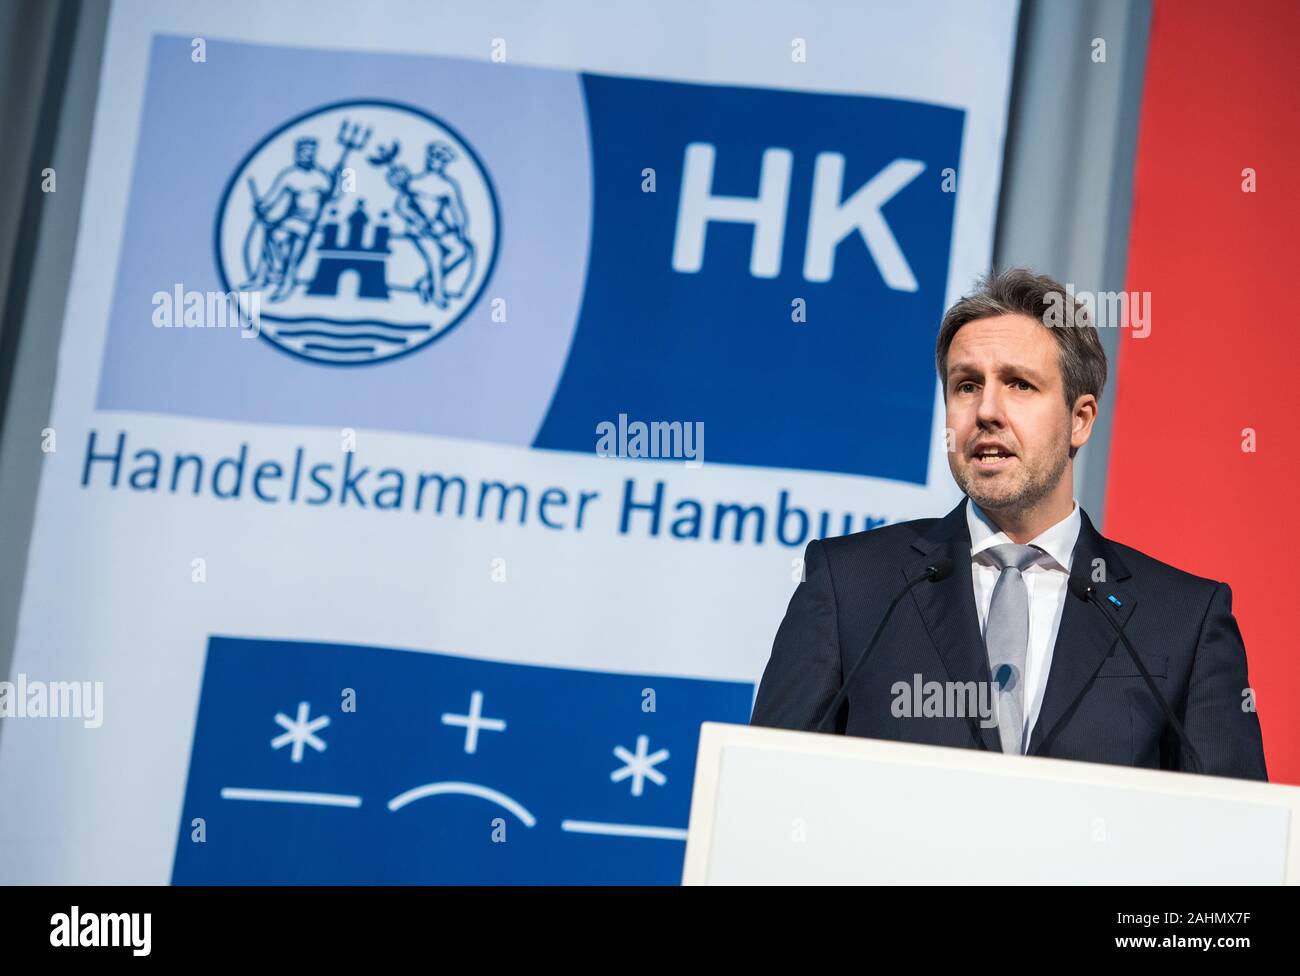 Hamburg Germany 31st Dec 2019 Andre Mucke Vice President Of The Hamburg Chamber Of Commerce Speaks